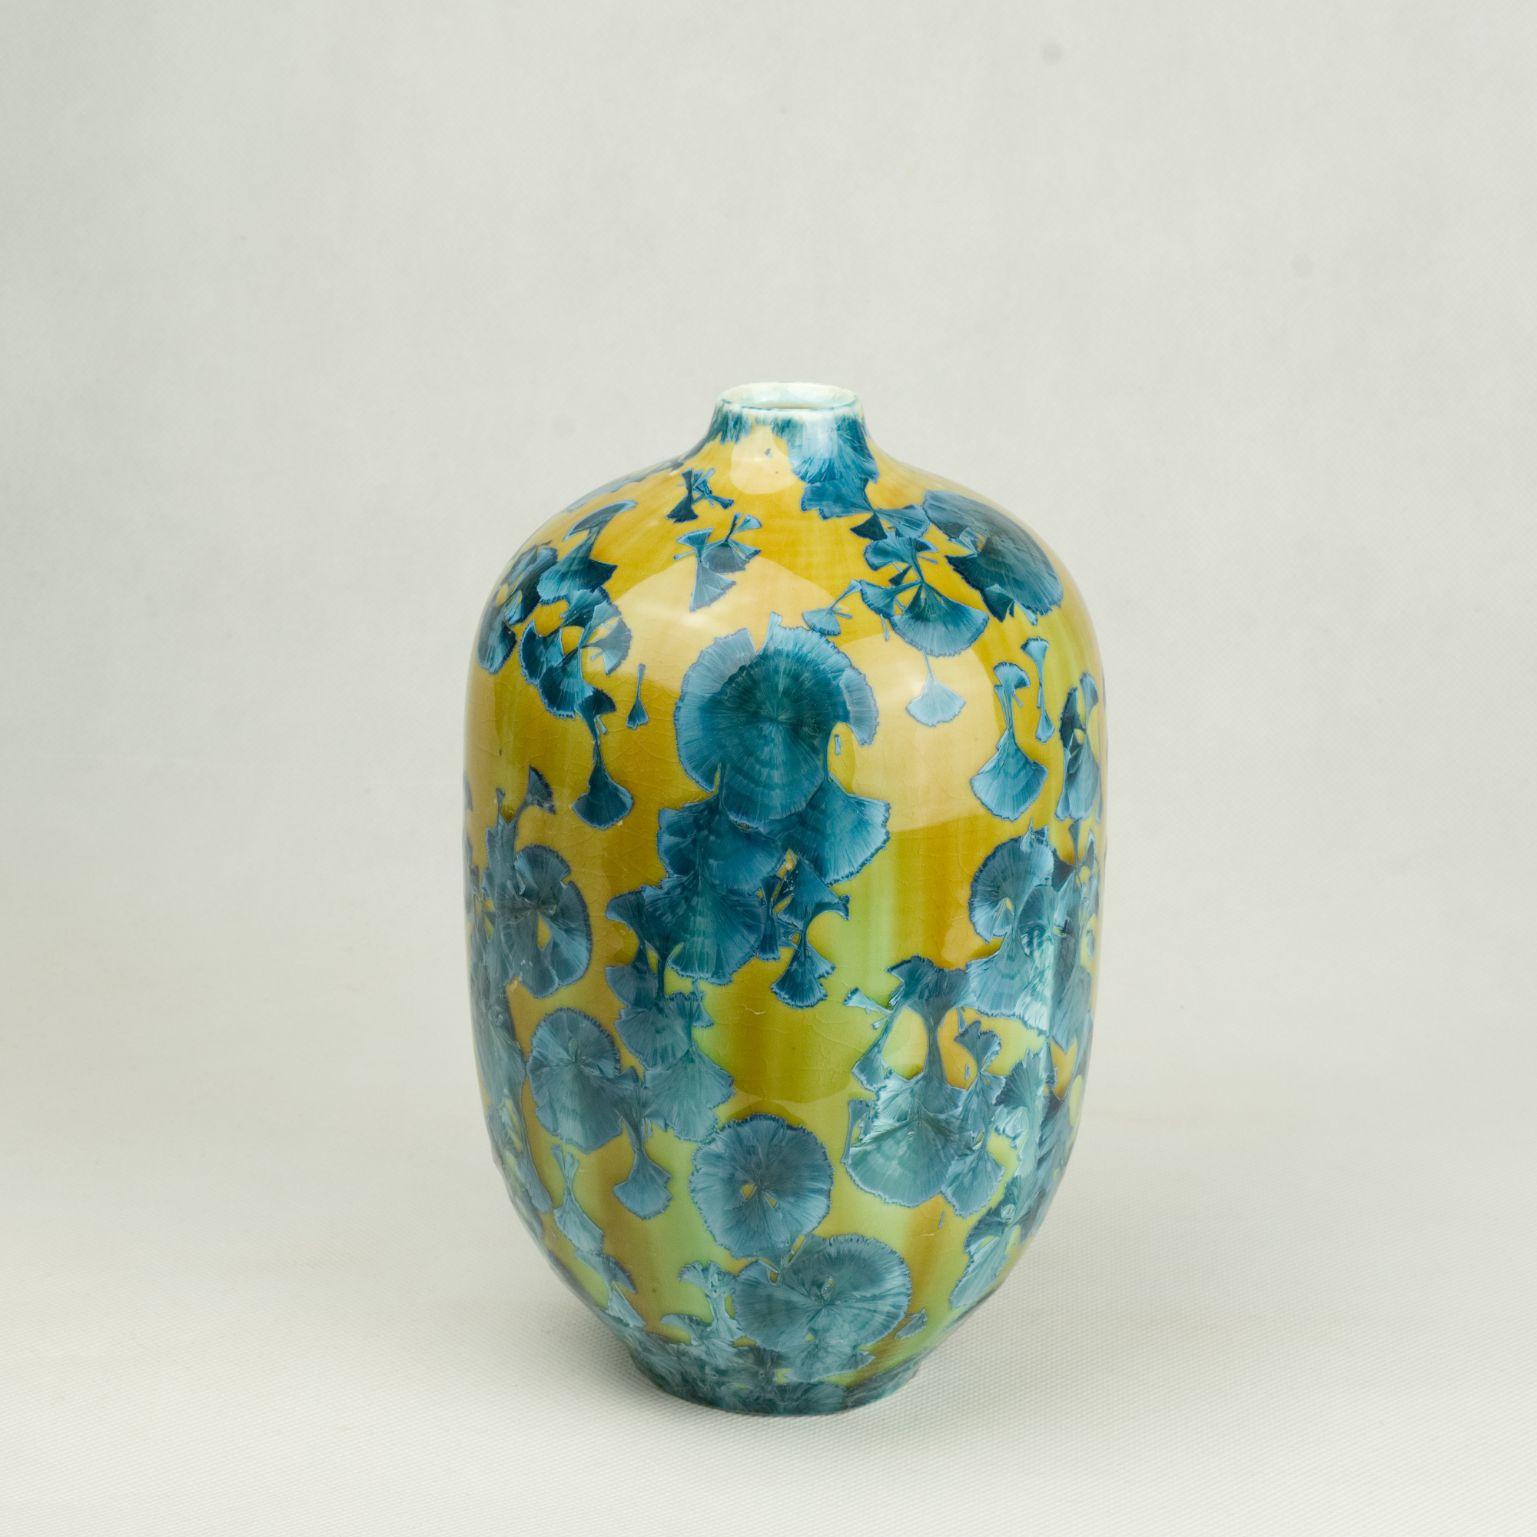 Vase Band 2 von Milan Pekar
Abmessungen: T15 x H24 cm
MATERIALIEN: Glasur, Porzellan

Handgefertigt in der Tschechischen Republik. 

Auch erhältlich: verschiedene Farben und Muster

Gründung eines eigenen Studios im August 2009 - Schwerpunkt: